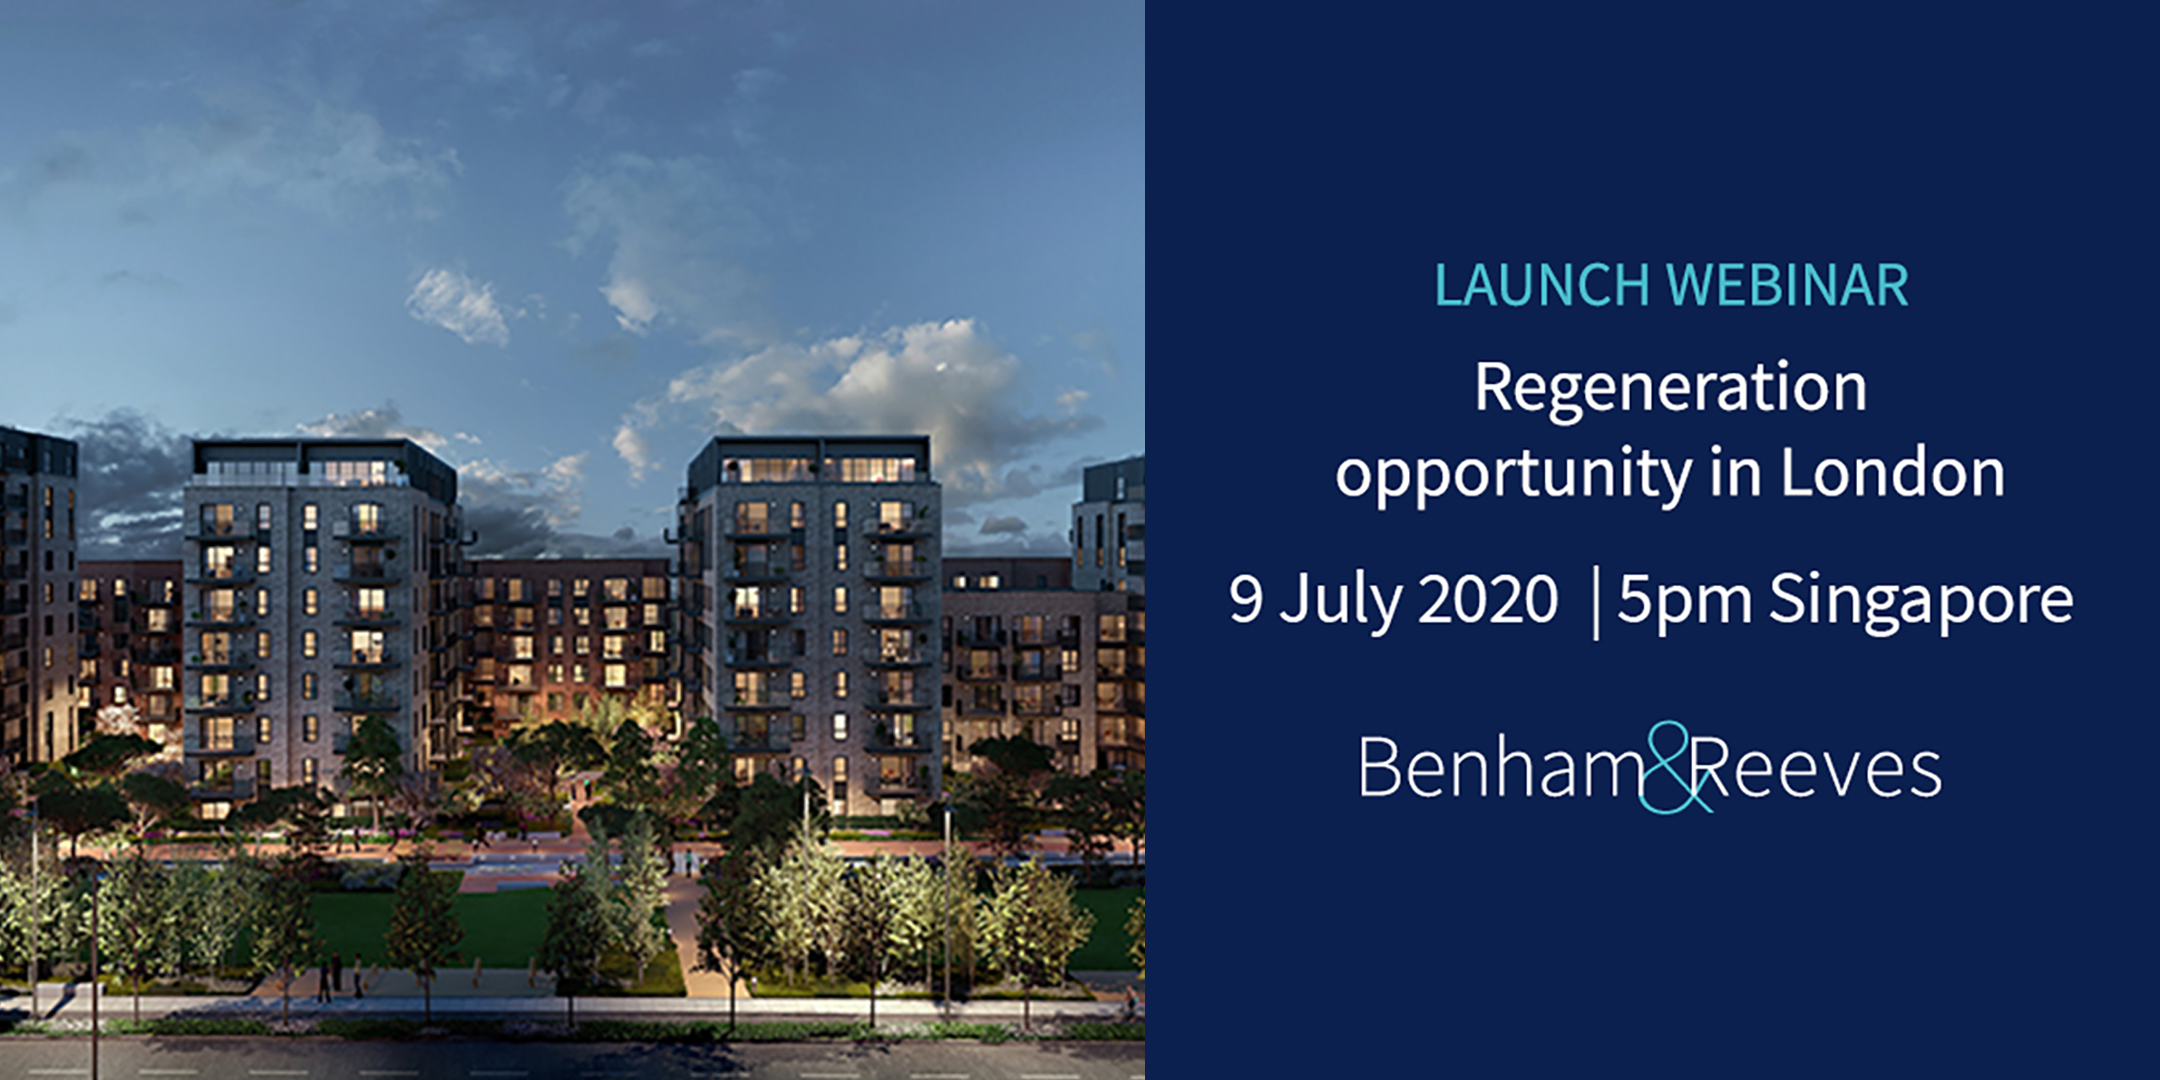 Launch webinar: Regeneration opportunity in London, Singapore